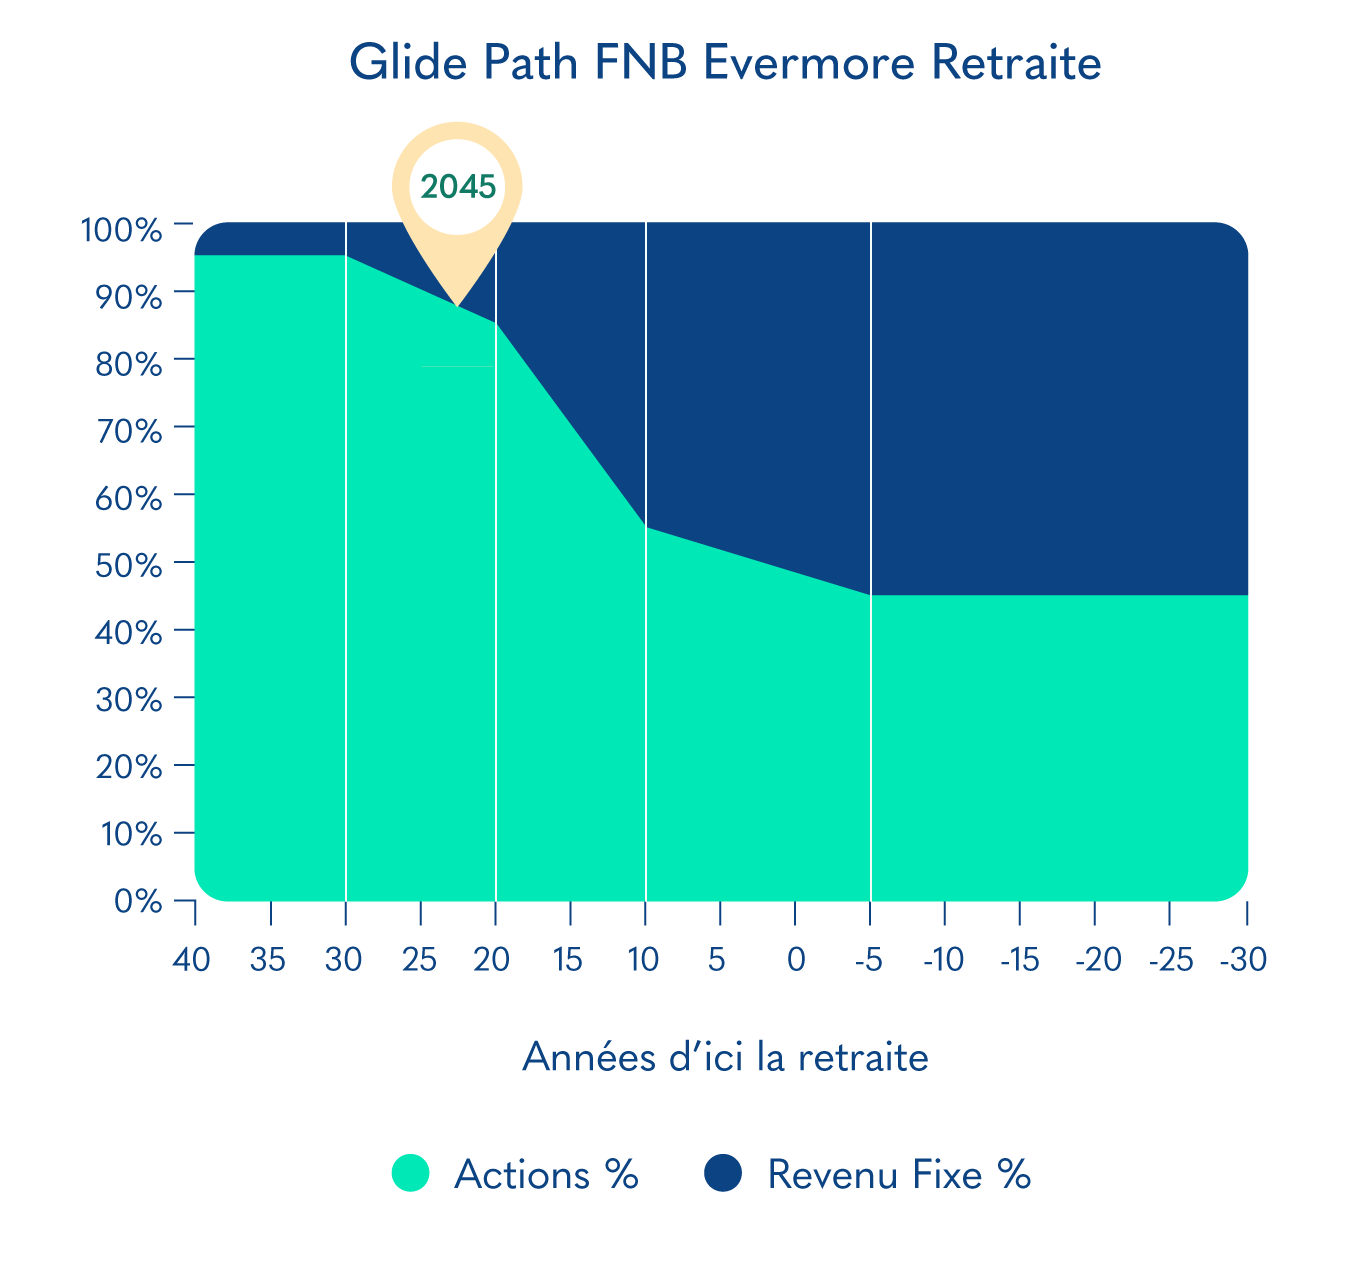 Glide Path FNB Evermore Retraite 2045